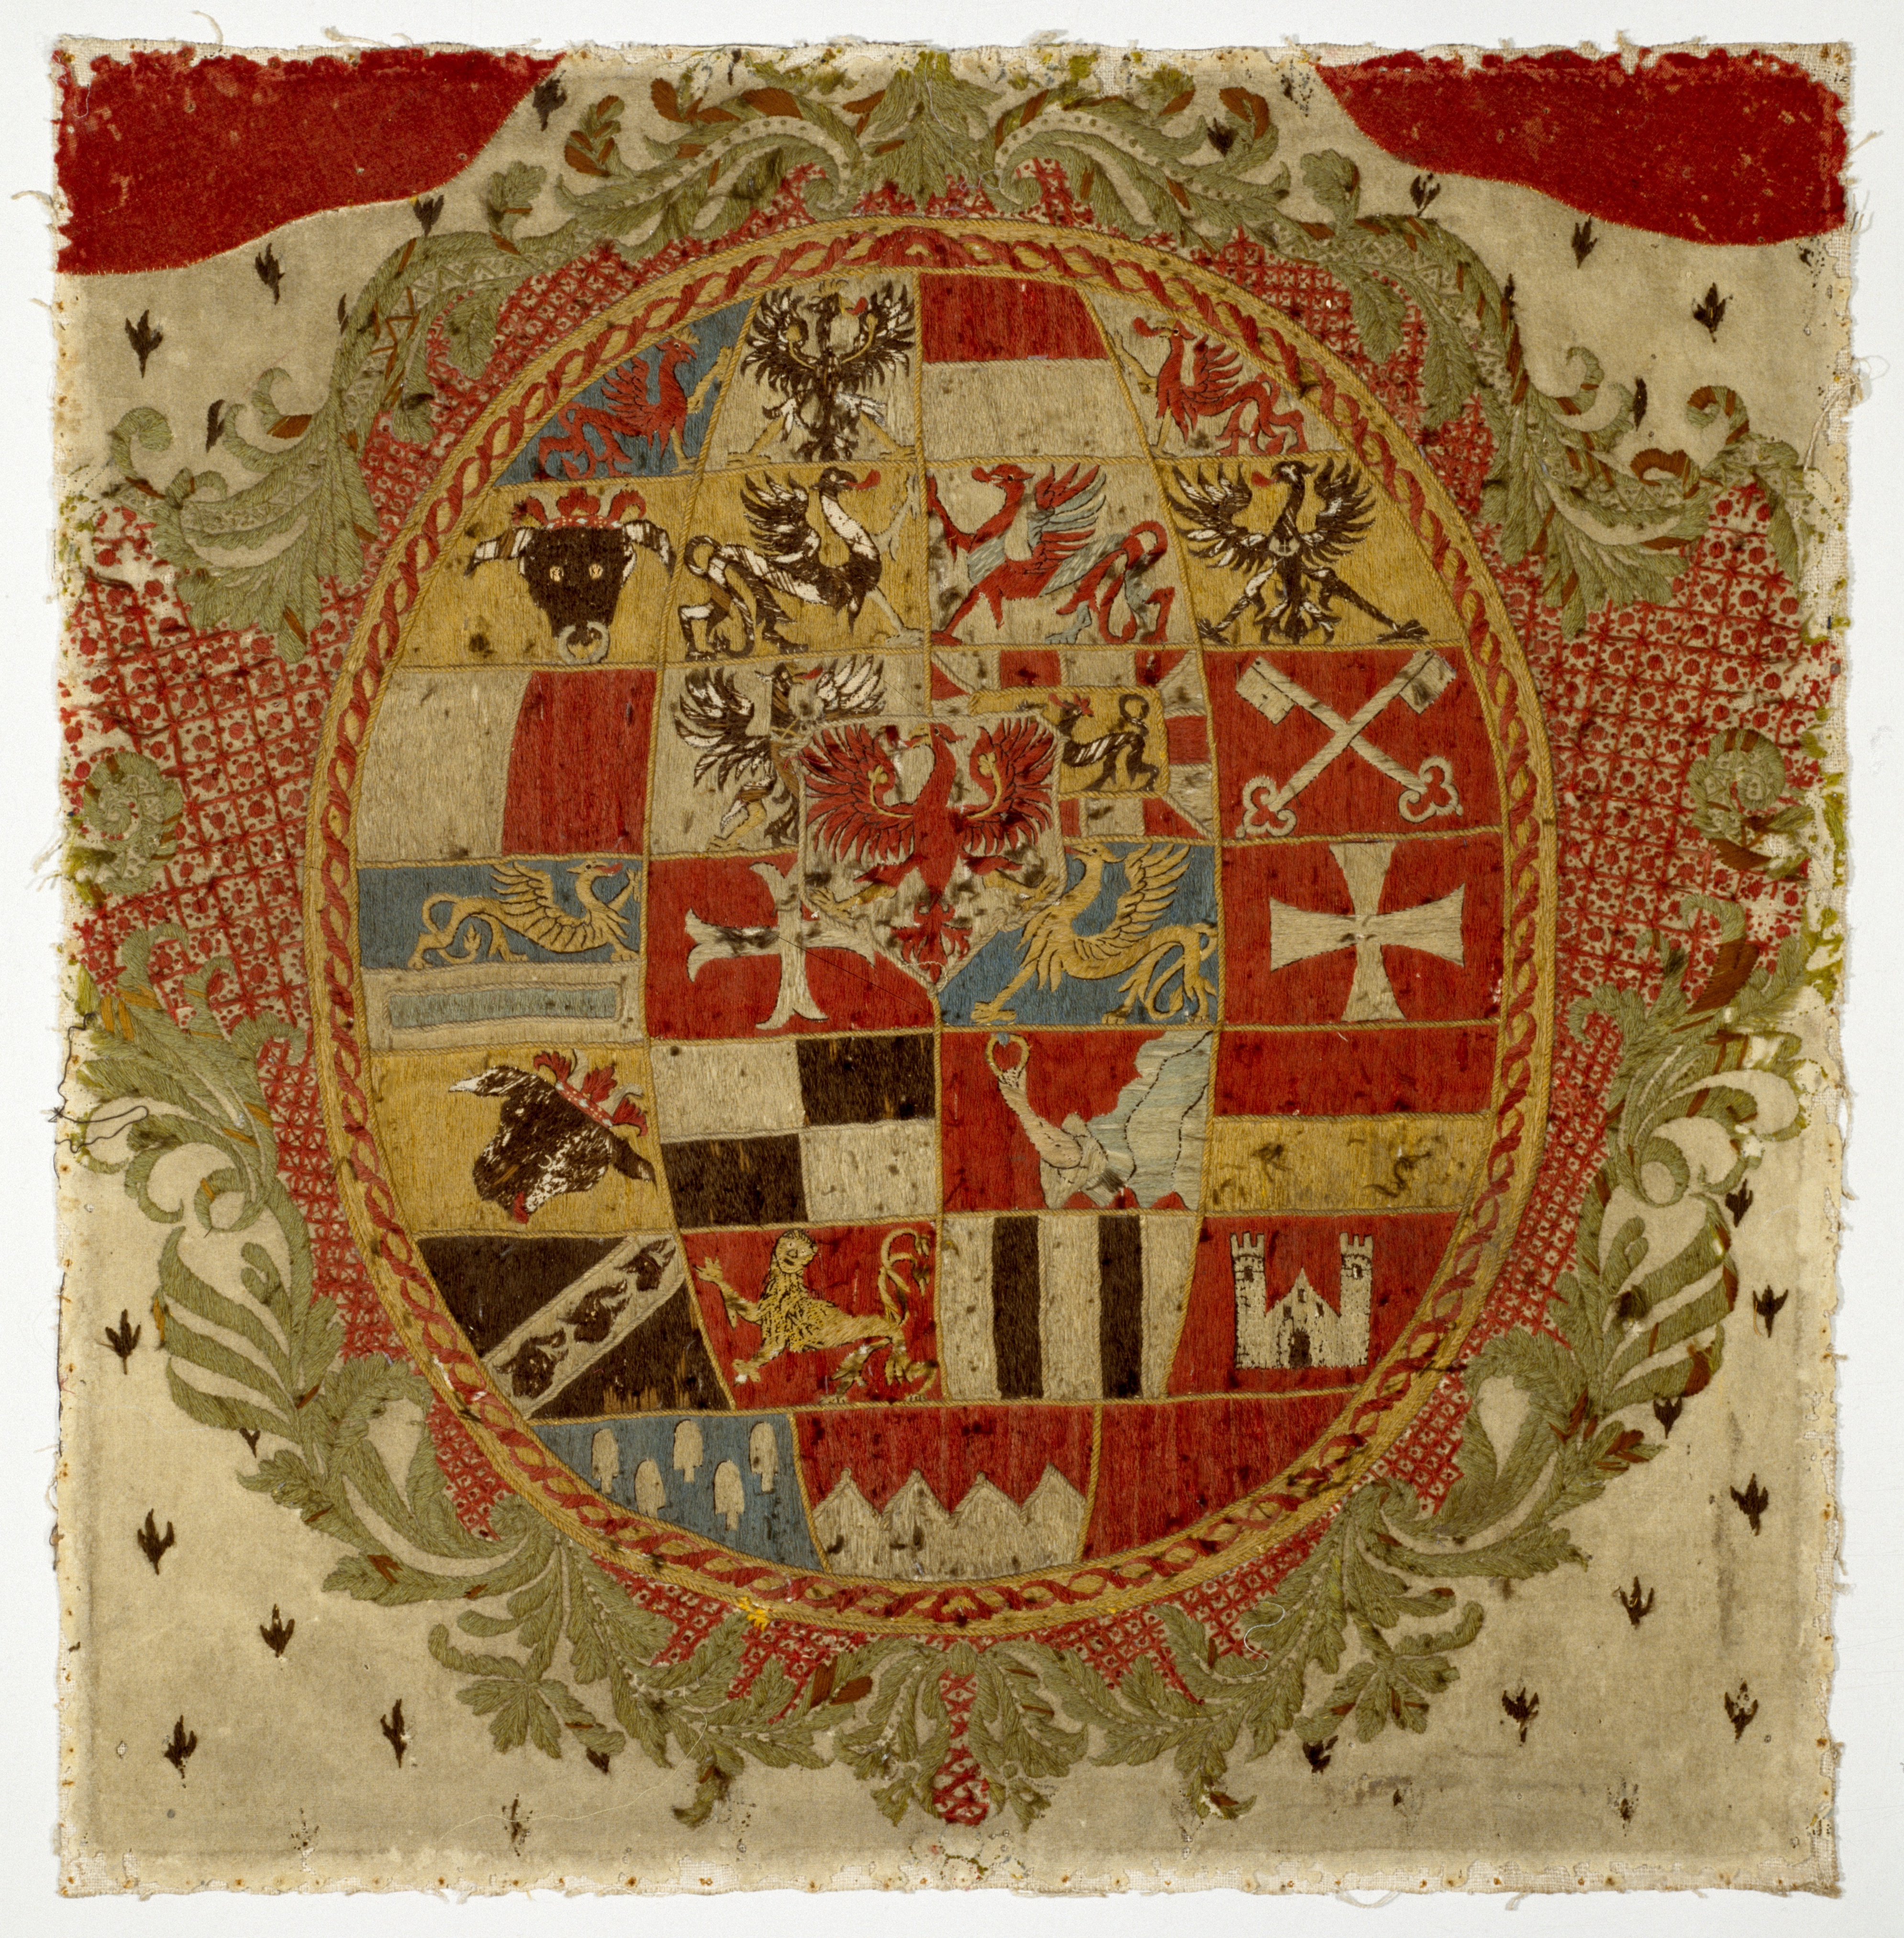 Ansbach: Wappen des Markgrafen von Ansbach, 1741-1757, IX 1011. (Stiftung Preußische Schlösser und Gärten Berlin-Brandenburg CC BY-NC-SA)